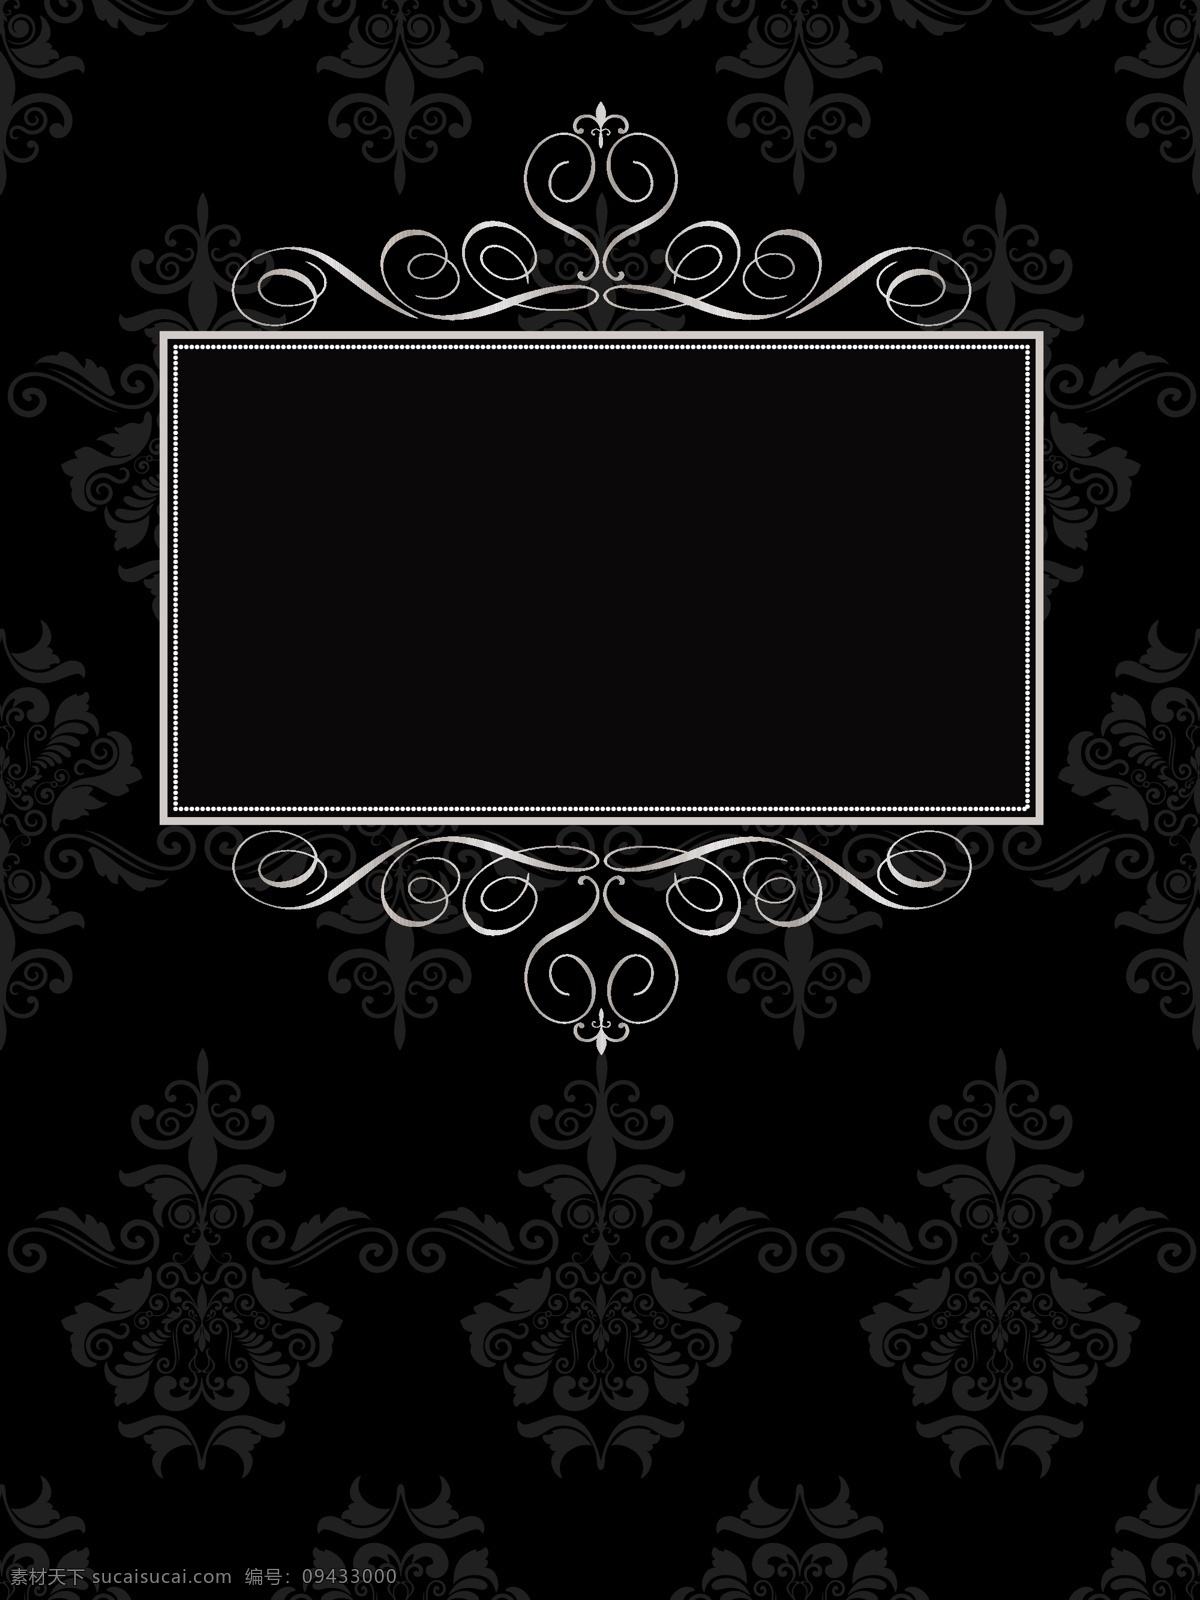 黑色 背景 装饰 框 框架 年份 边界 装饰品 相框 典雅 观赏 锦缎 经典 复古复古 华丽的装饰